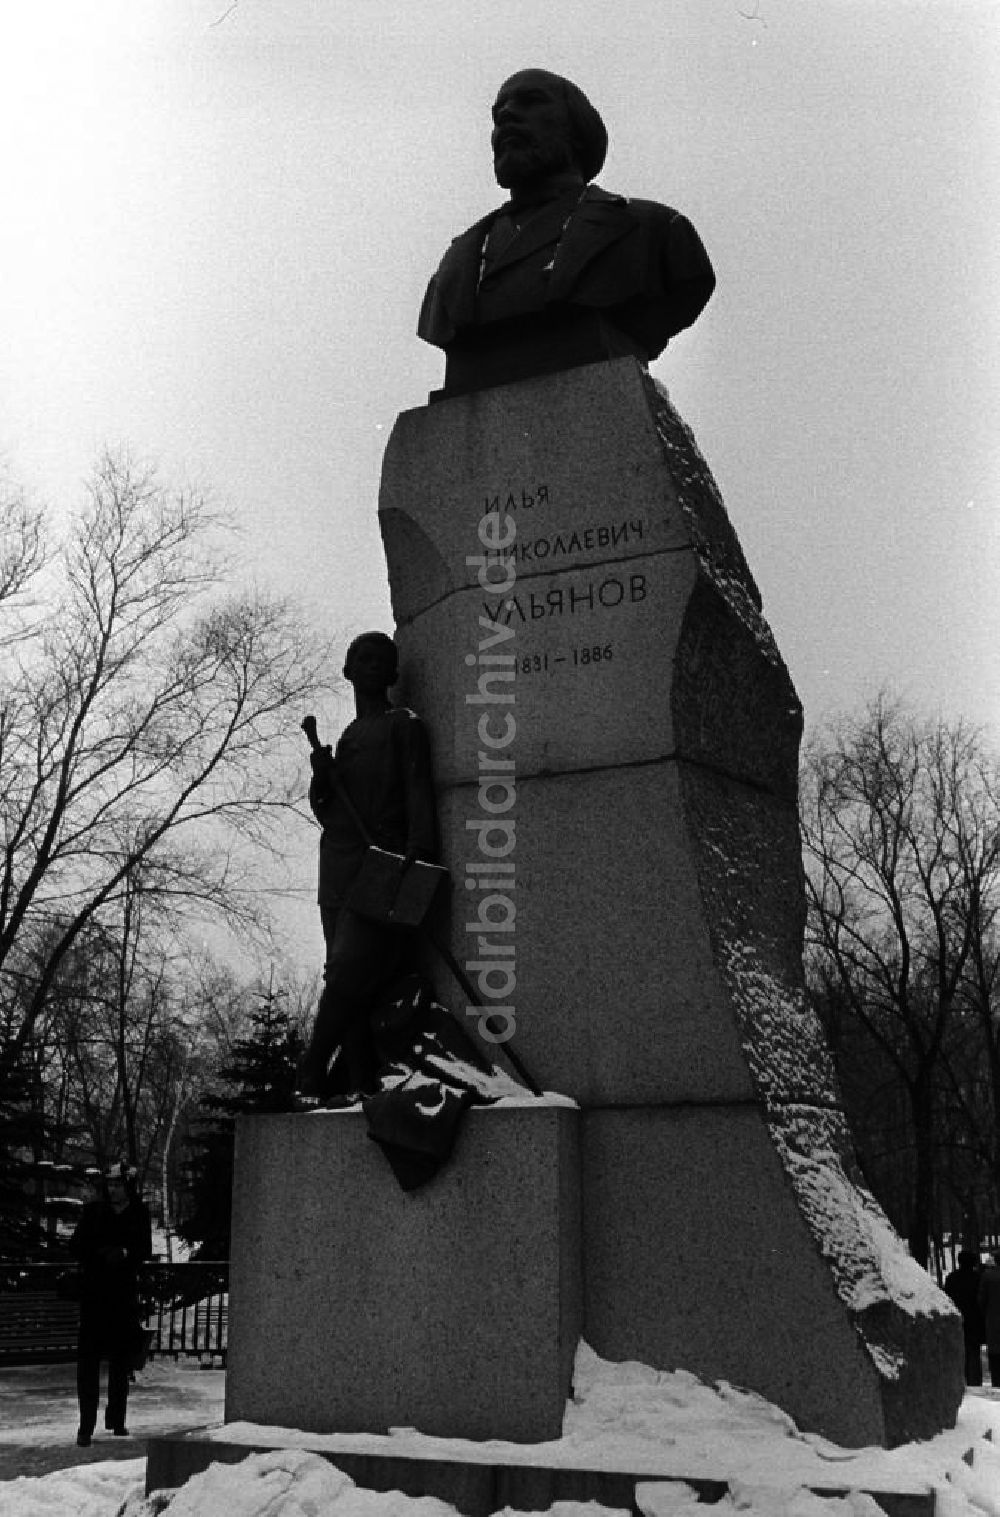 DDR-Fotoarchiv: Uljanowsk - Denkmal I. N. Uljanow in Uljanowsk